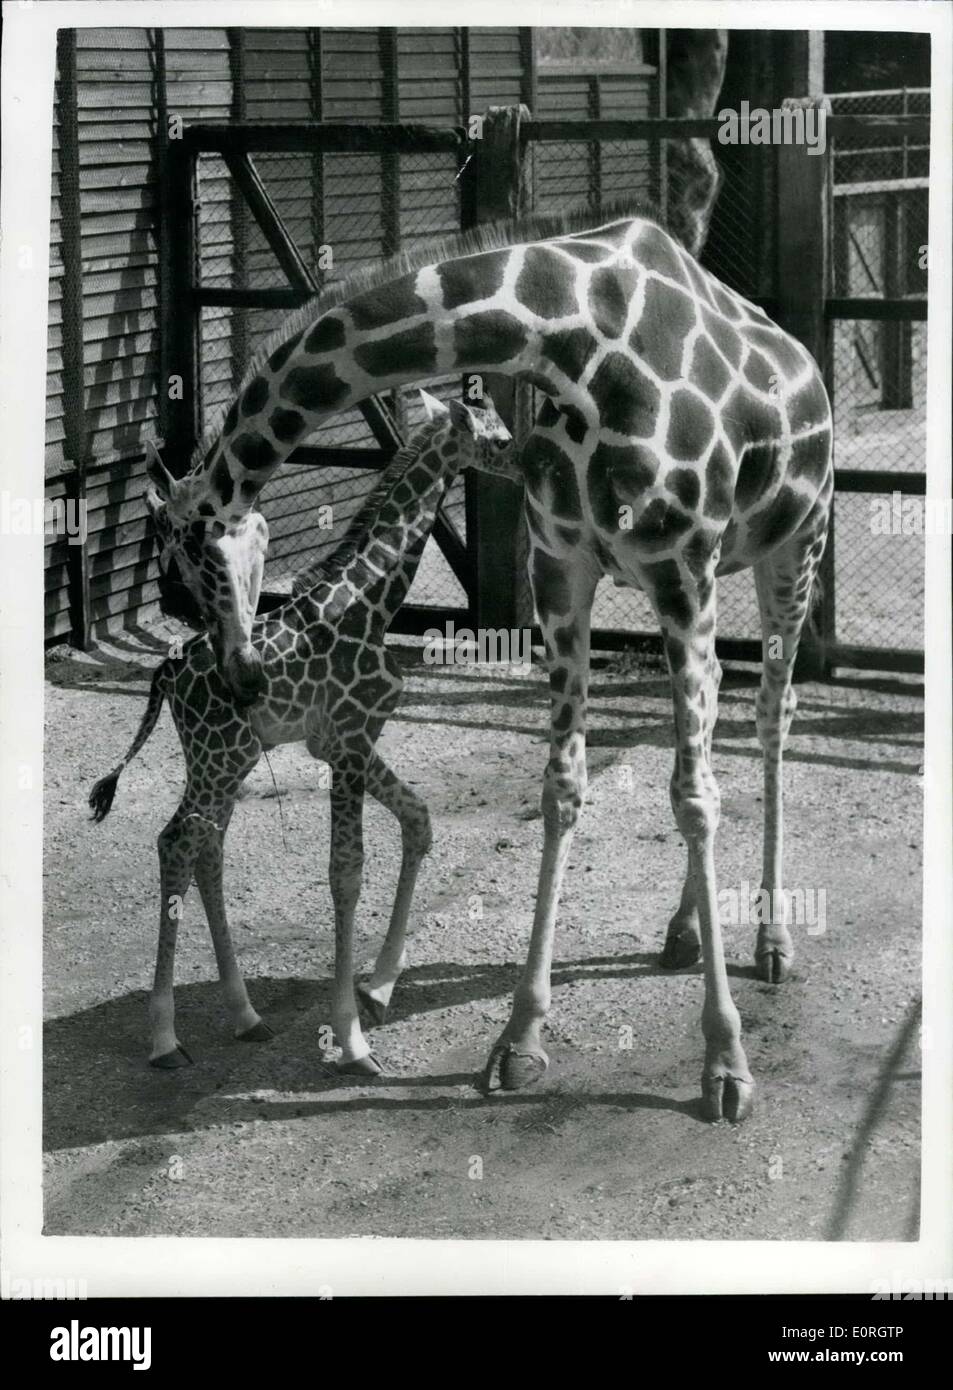 19. August 1959 - neun Tage alten Baby-Giraffe in Whipsnade. im Wert von 500. die Baby-Giraffe geboren, Maggie und Twigaat Whipsnade Zoo - vor neun Tagen wurde gesehen, dass das Baby bei 500 geschätzt wird. das Foto zeigt das Baby hält in der Nähe seiner Mutter Maggie - im Whipsnads Zoo heute. Stockfoto